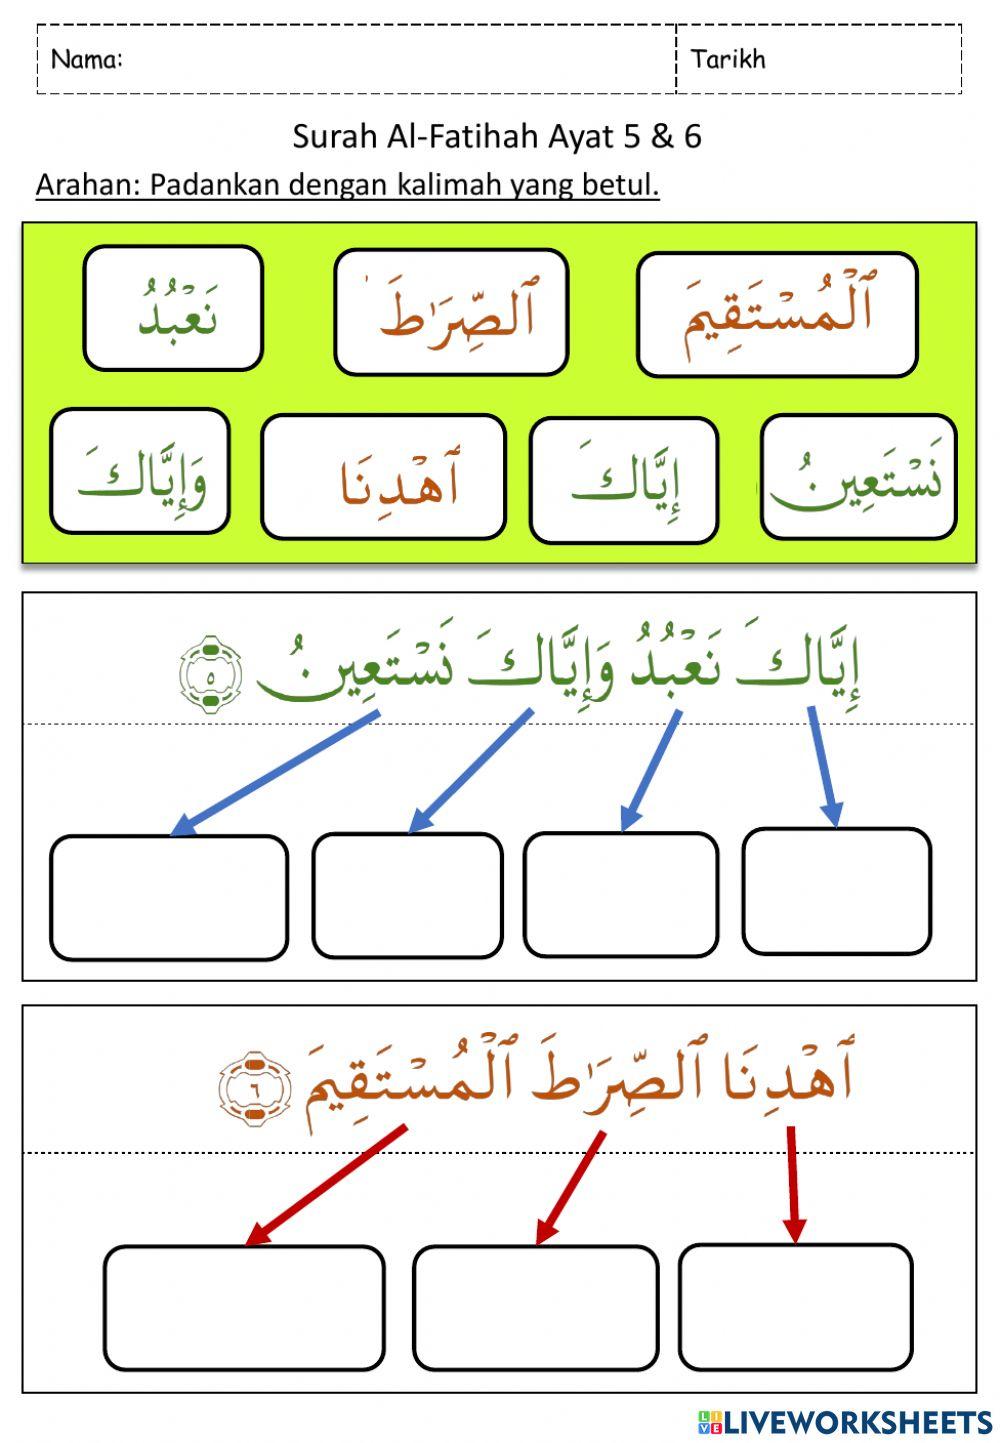 Latihan Hafazan Surah Al-Fatihah Ayat 5 & 6